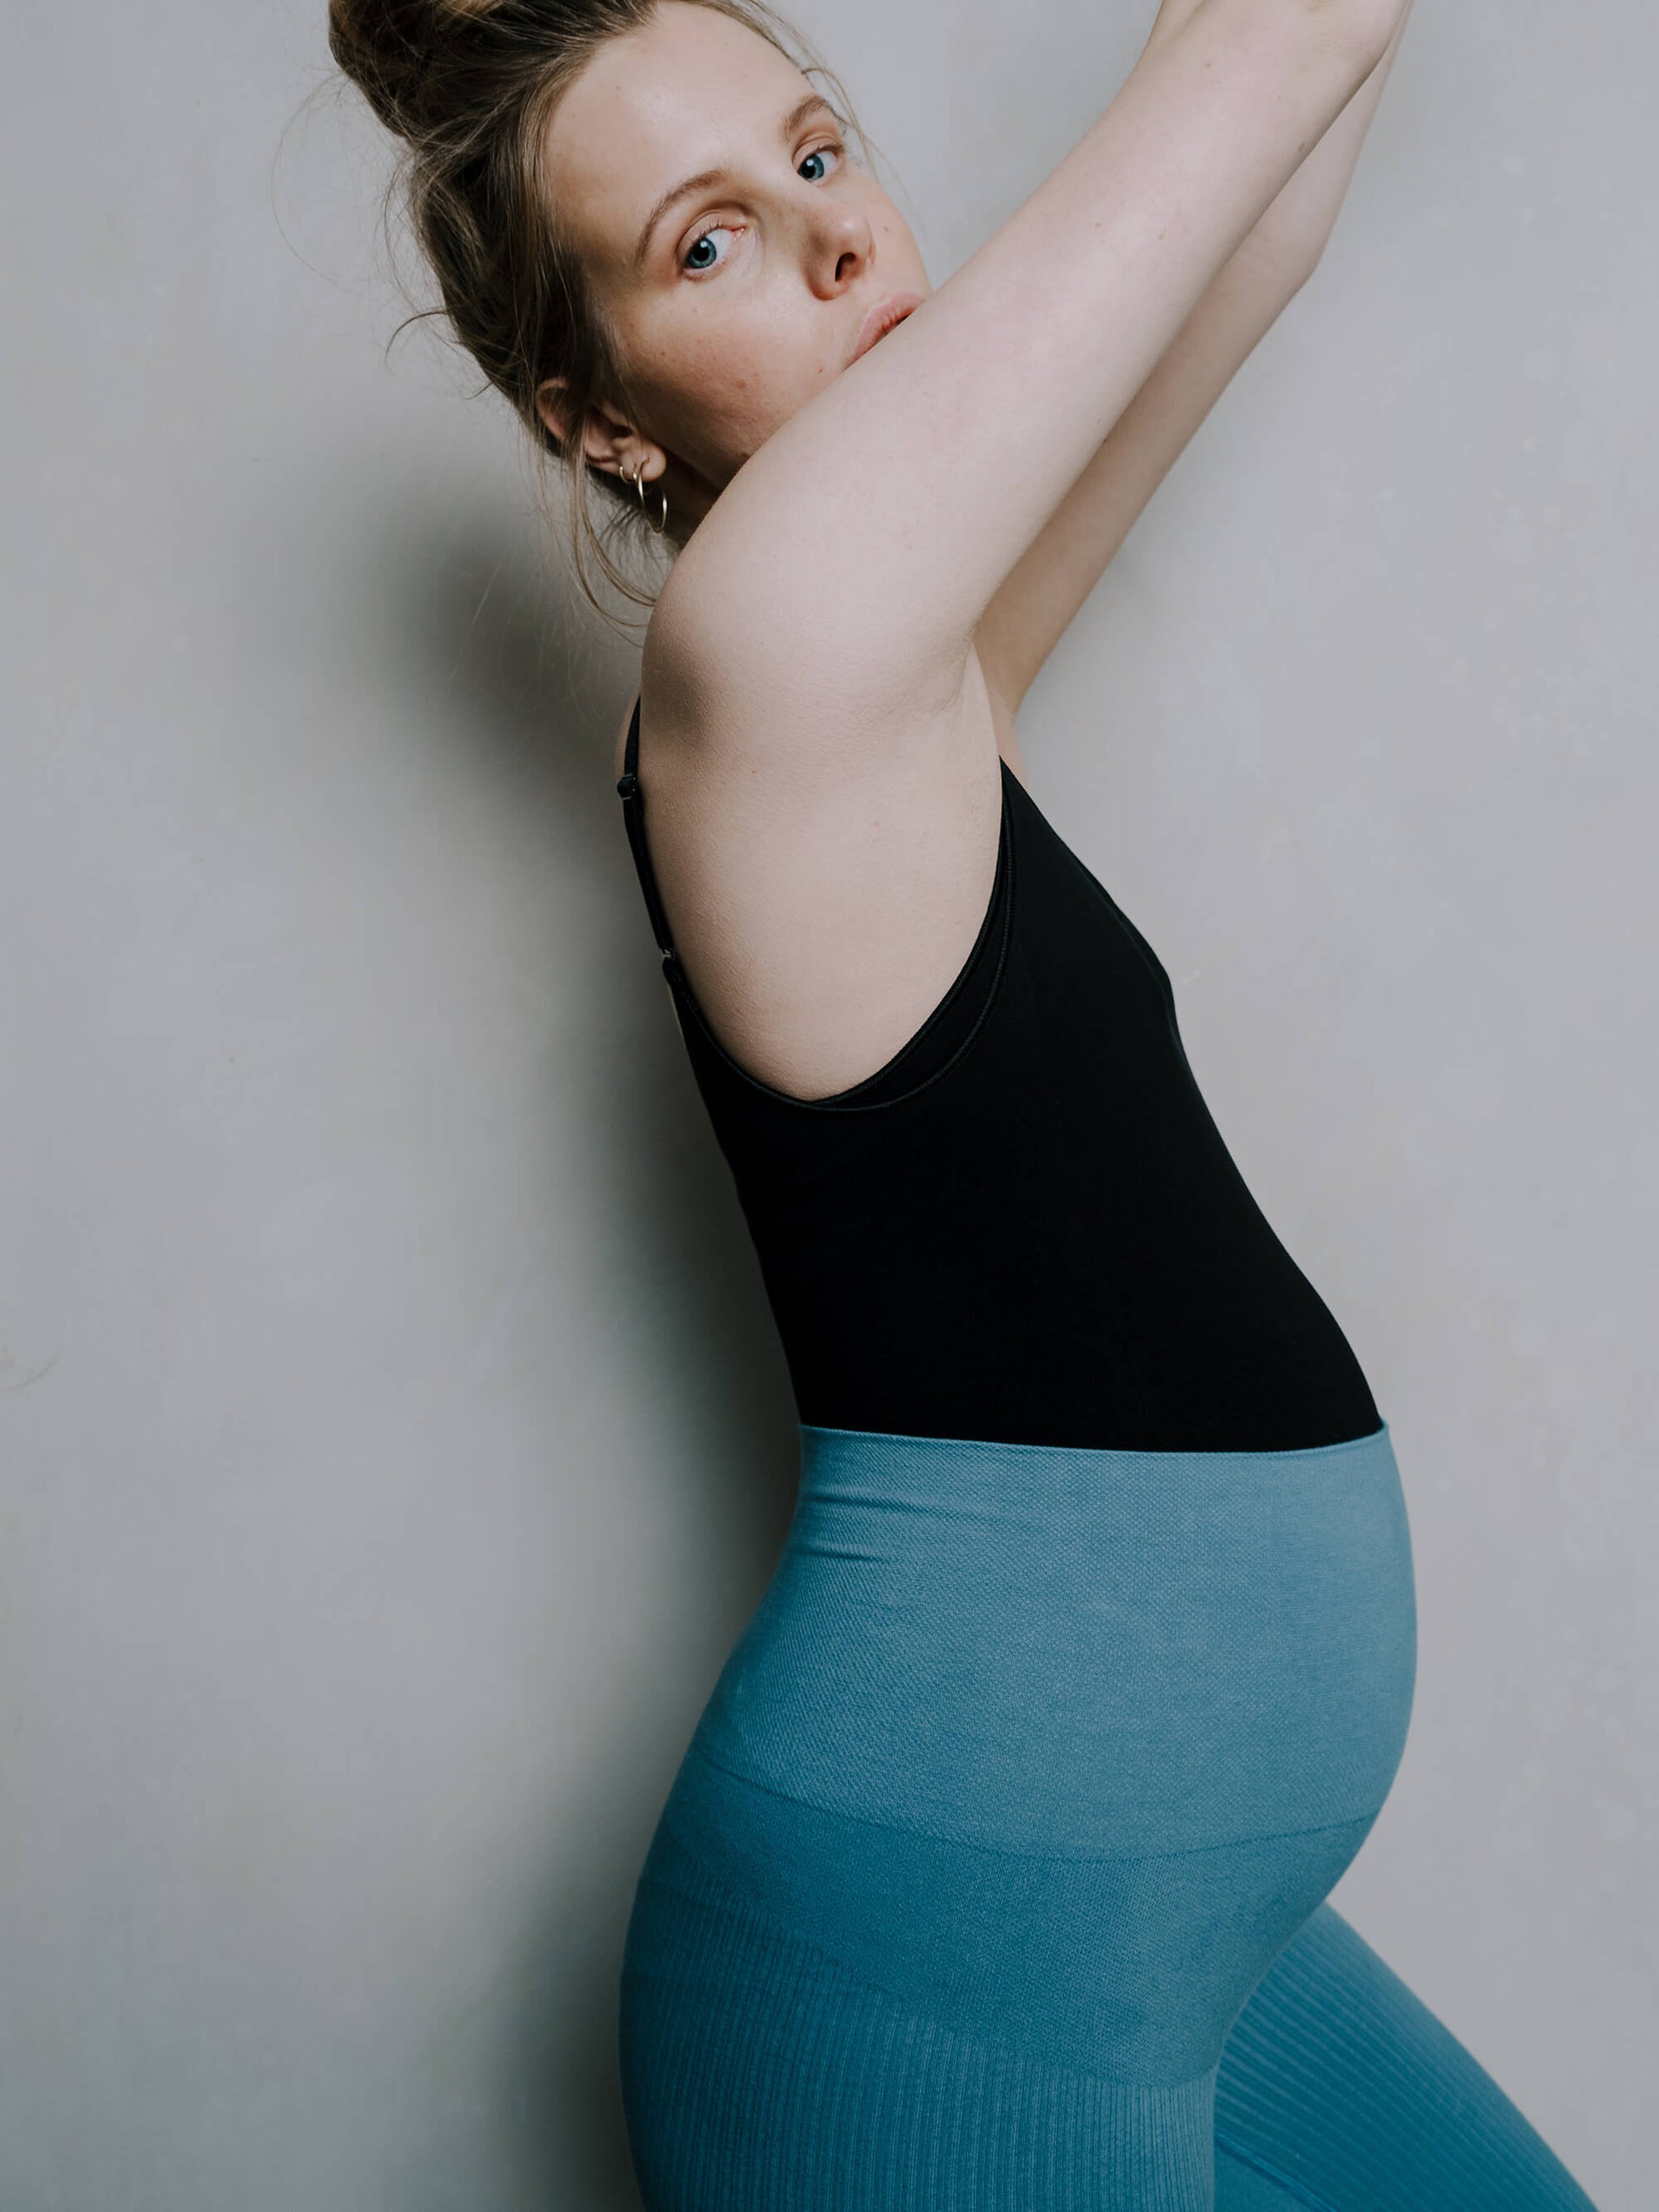 Jorgen House Blue colour high waist leggings and black bodysuit on pregnant female body